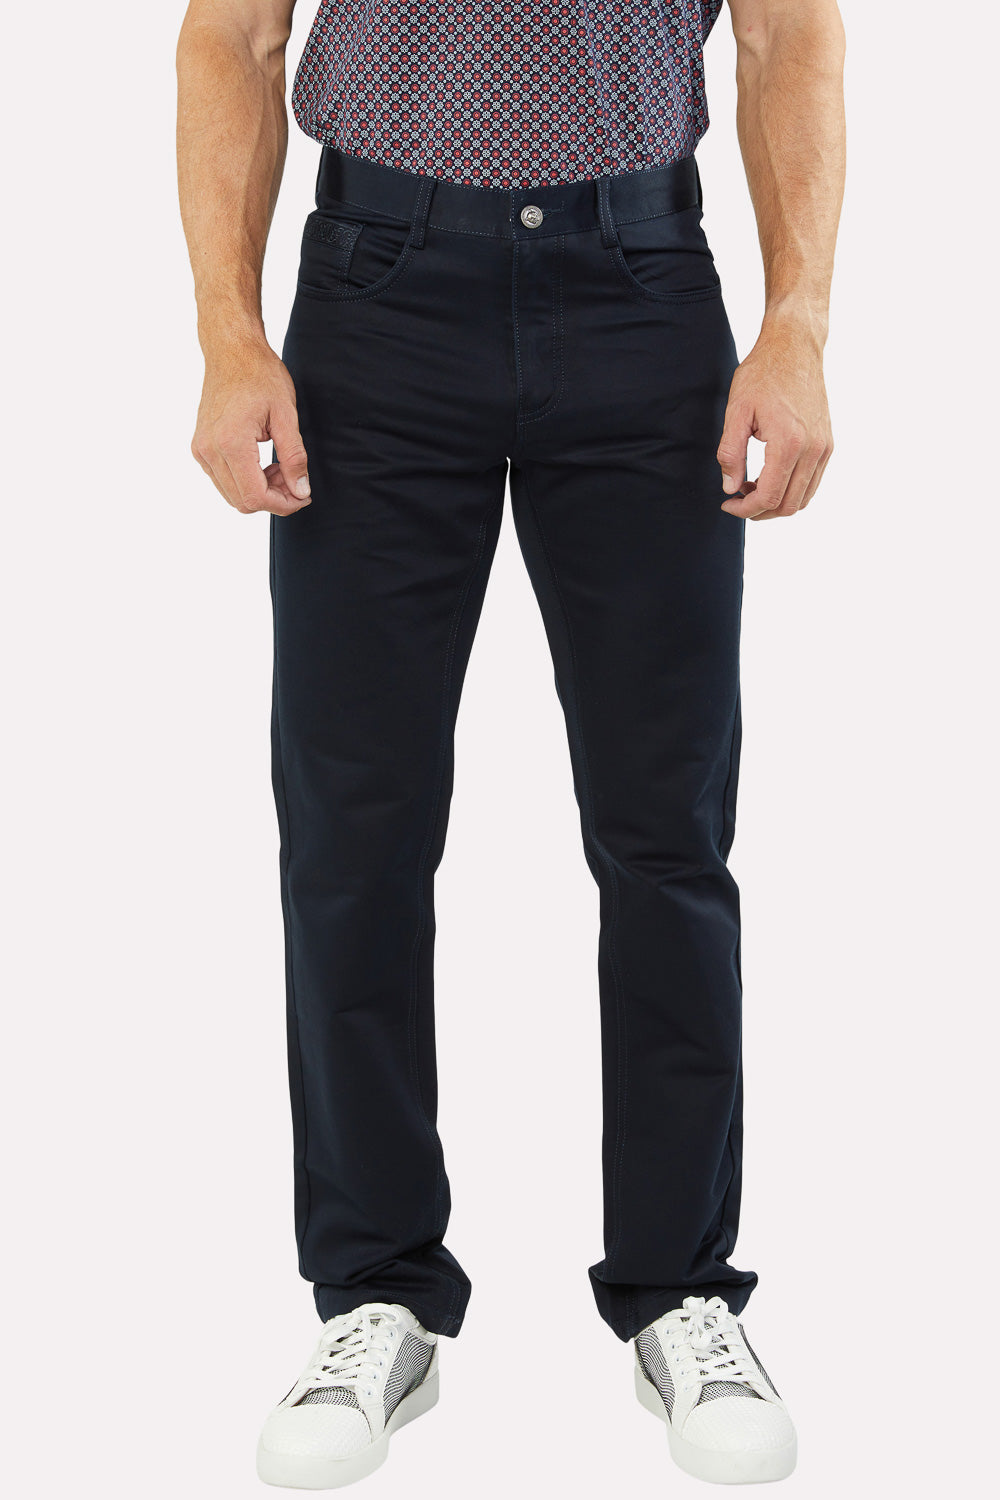 Men's Jeans Pants Navy | FDP7823